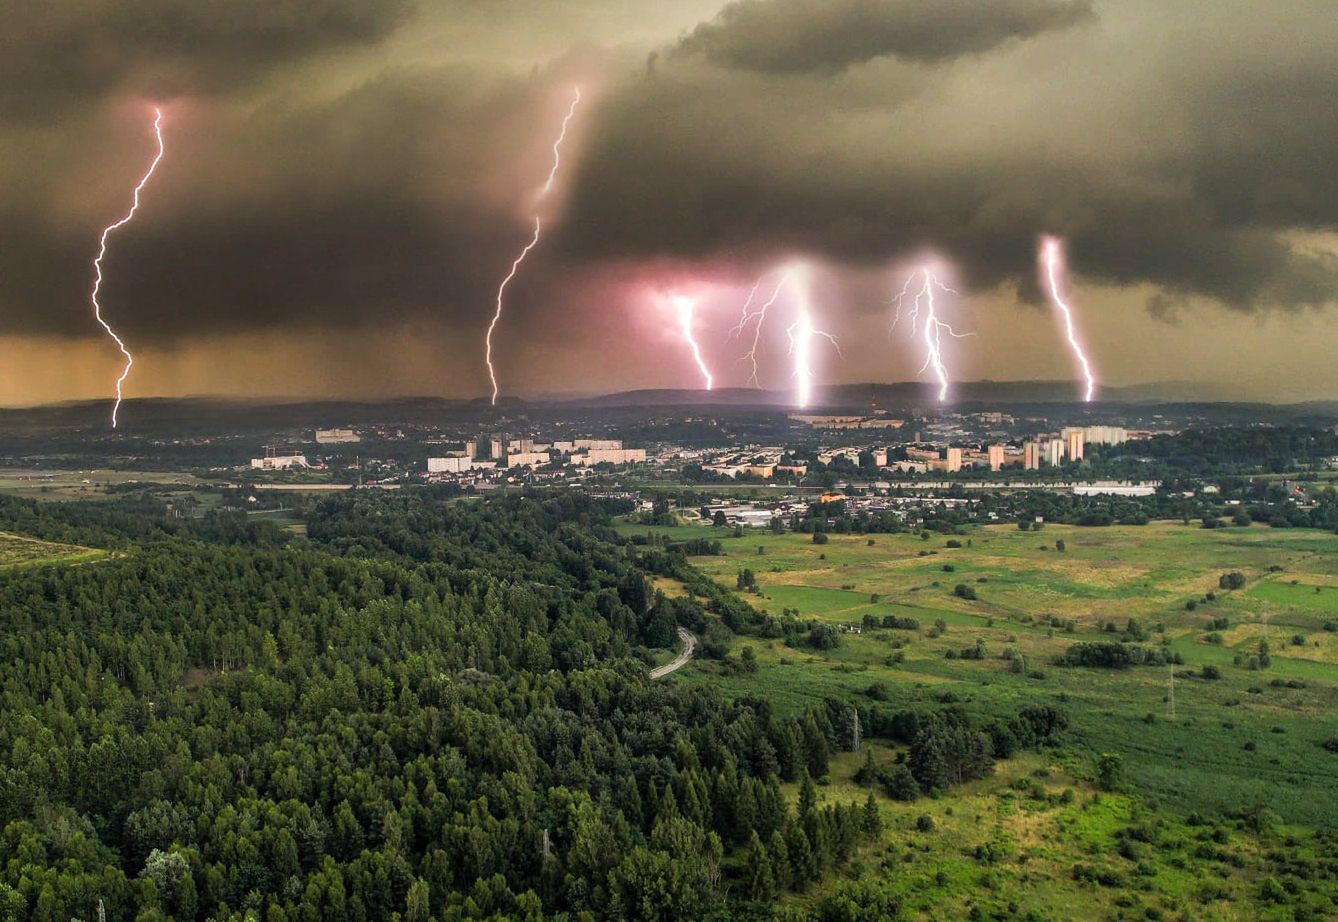 Burza nad Małopolską. Sześć piorunów w jednym miejscu. Niesamowite ujęcie